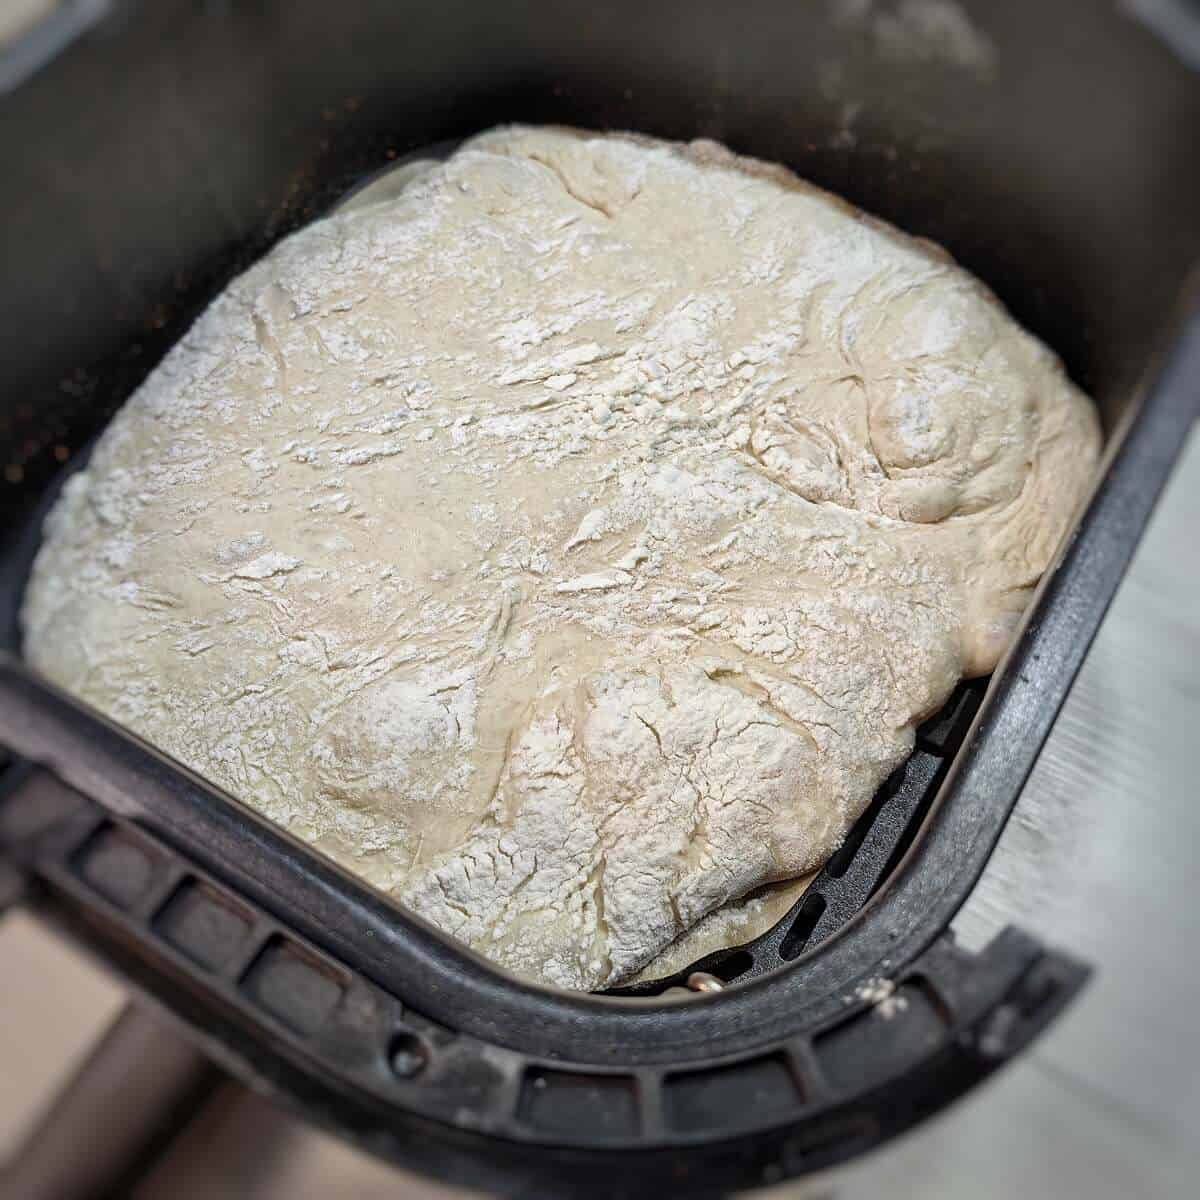 risen ciabatta dough insider air fryer basket